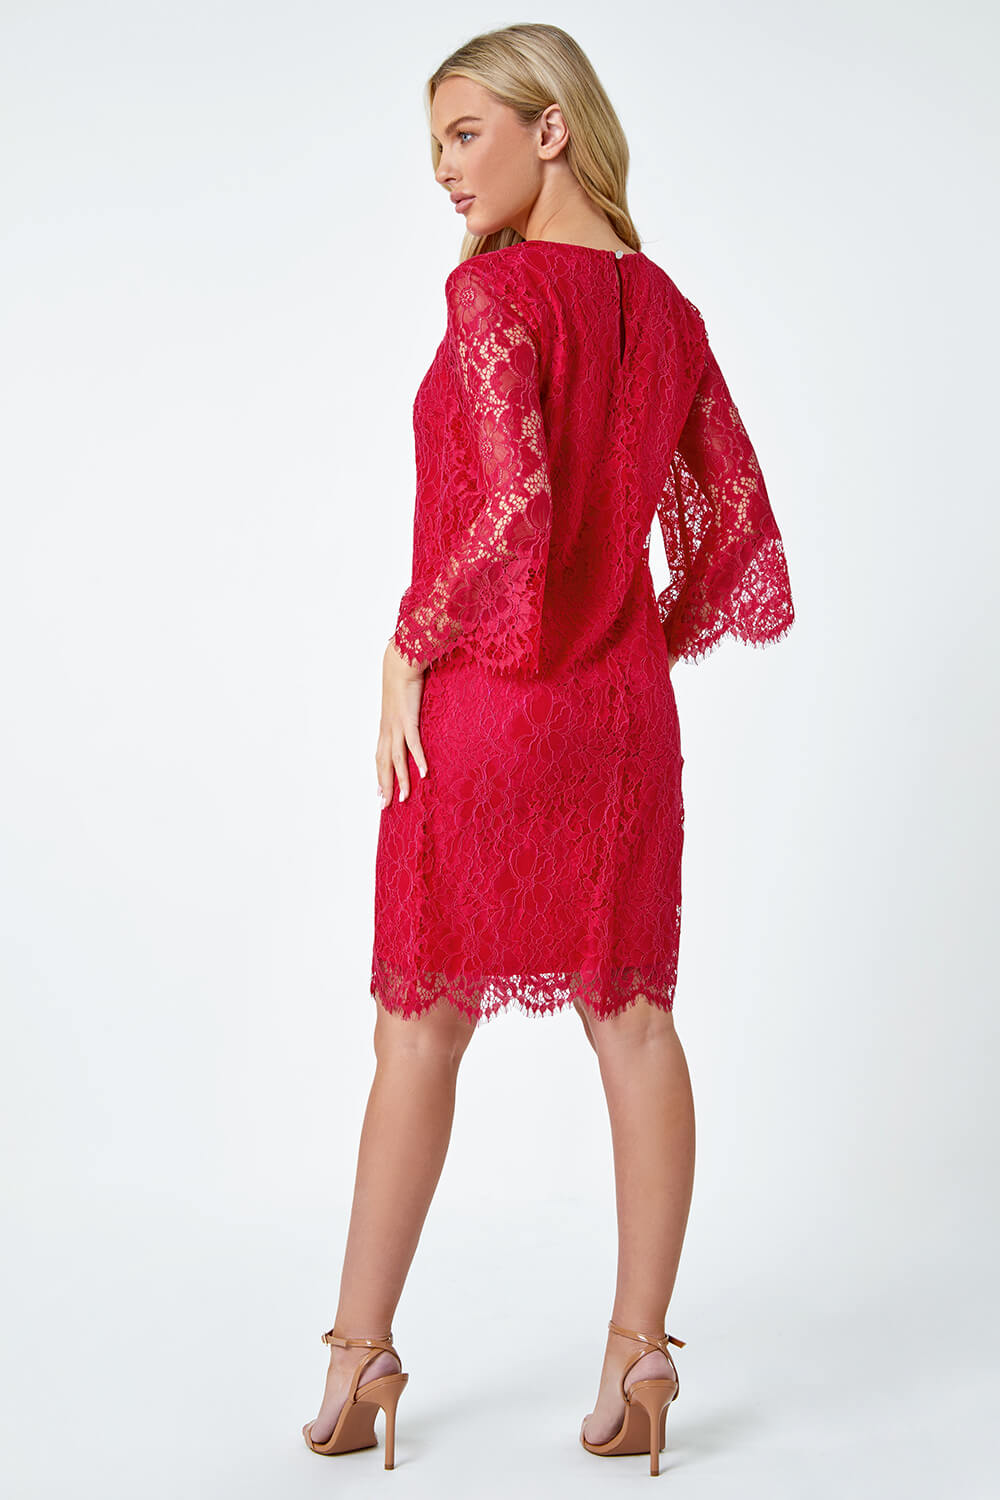 CERISE Petite Lace Overlay Tunic Dress, Image 3 of 5